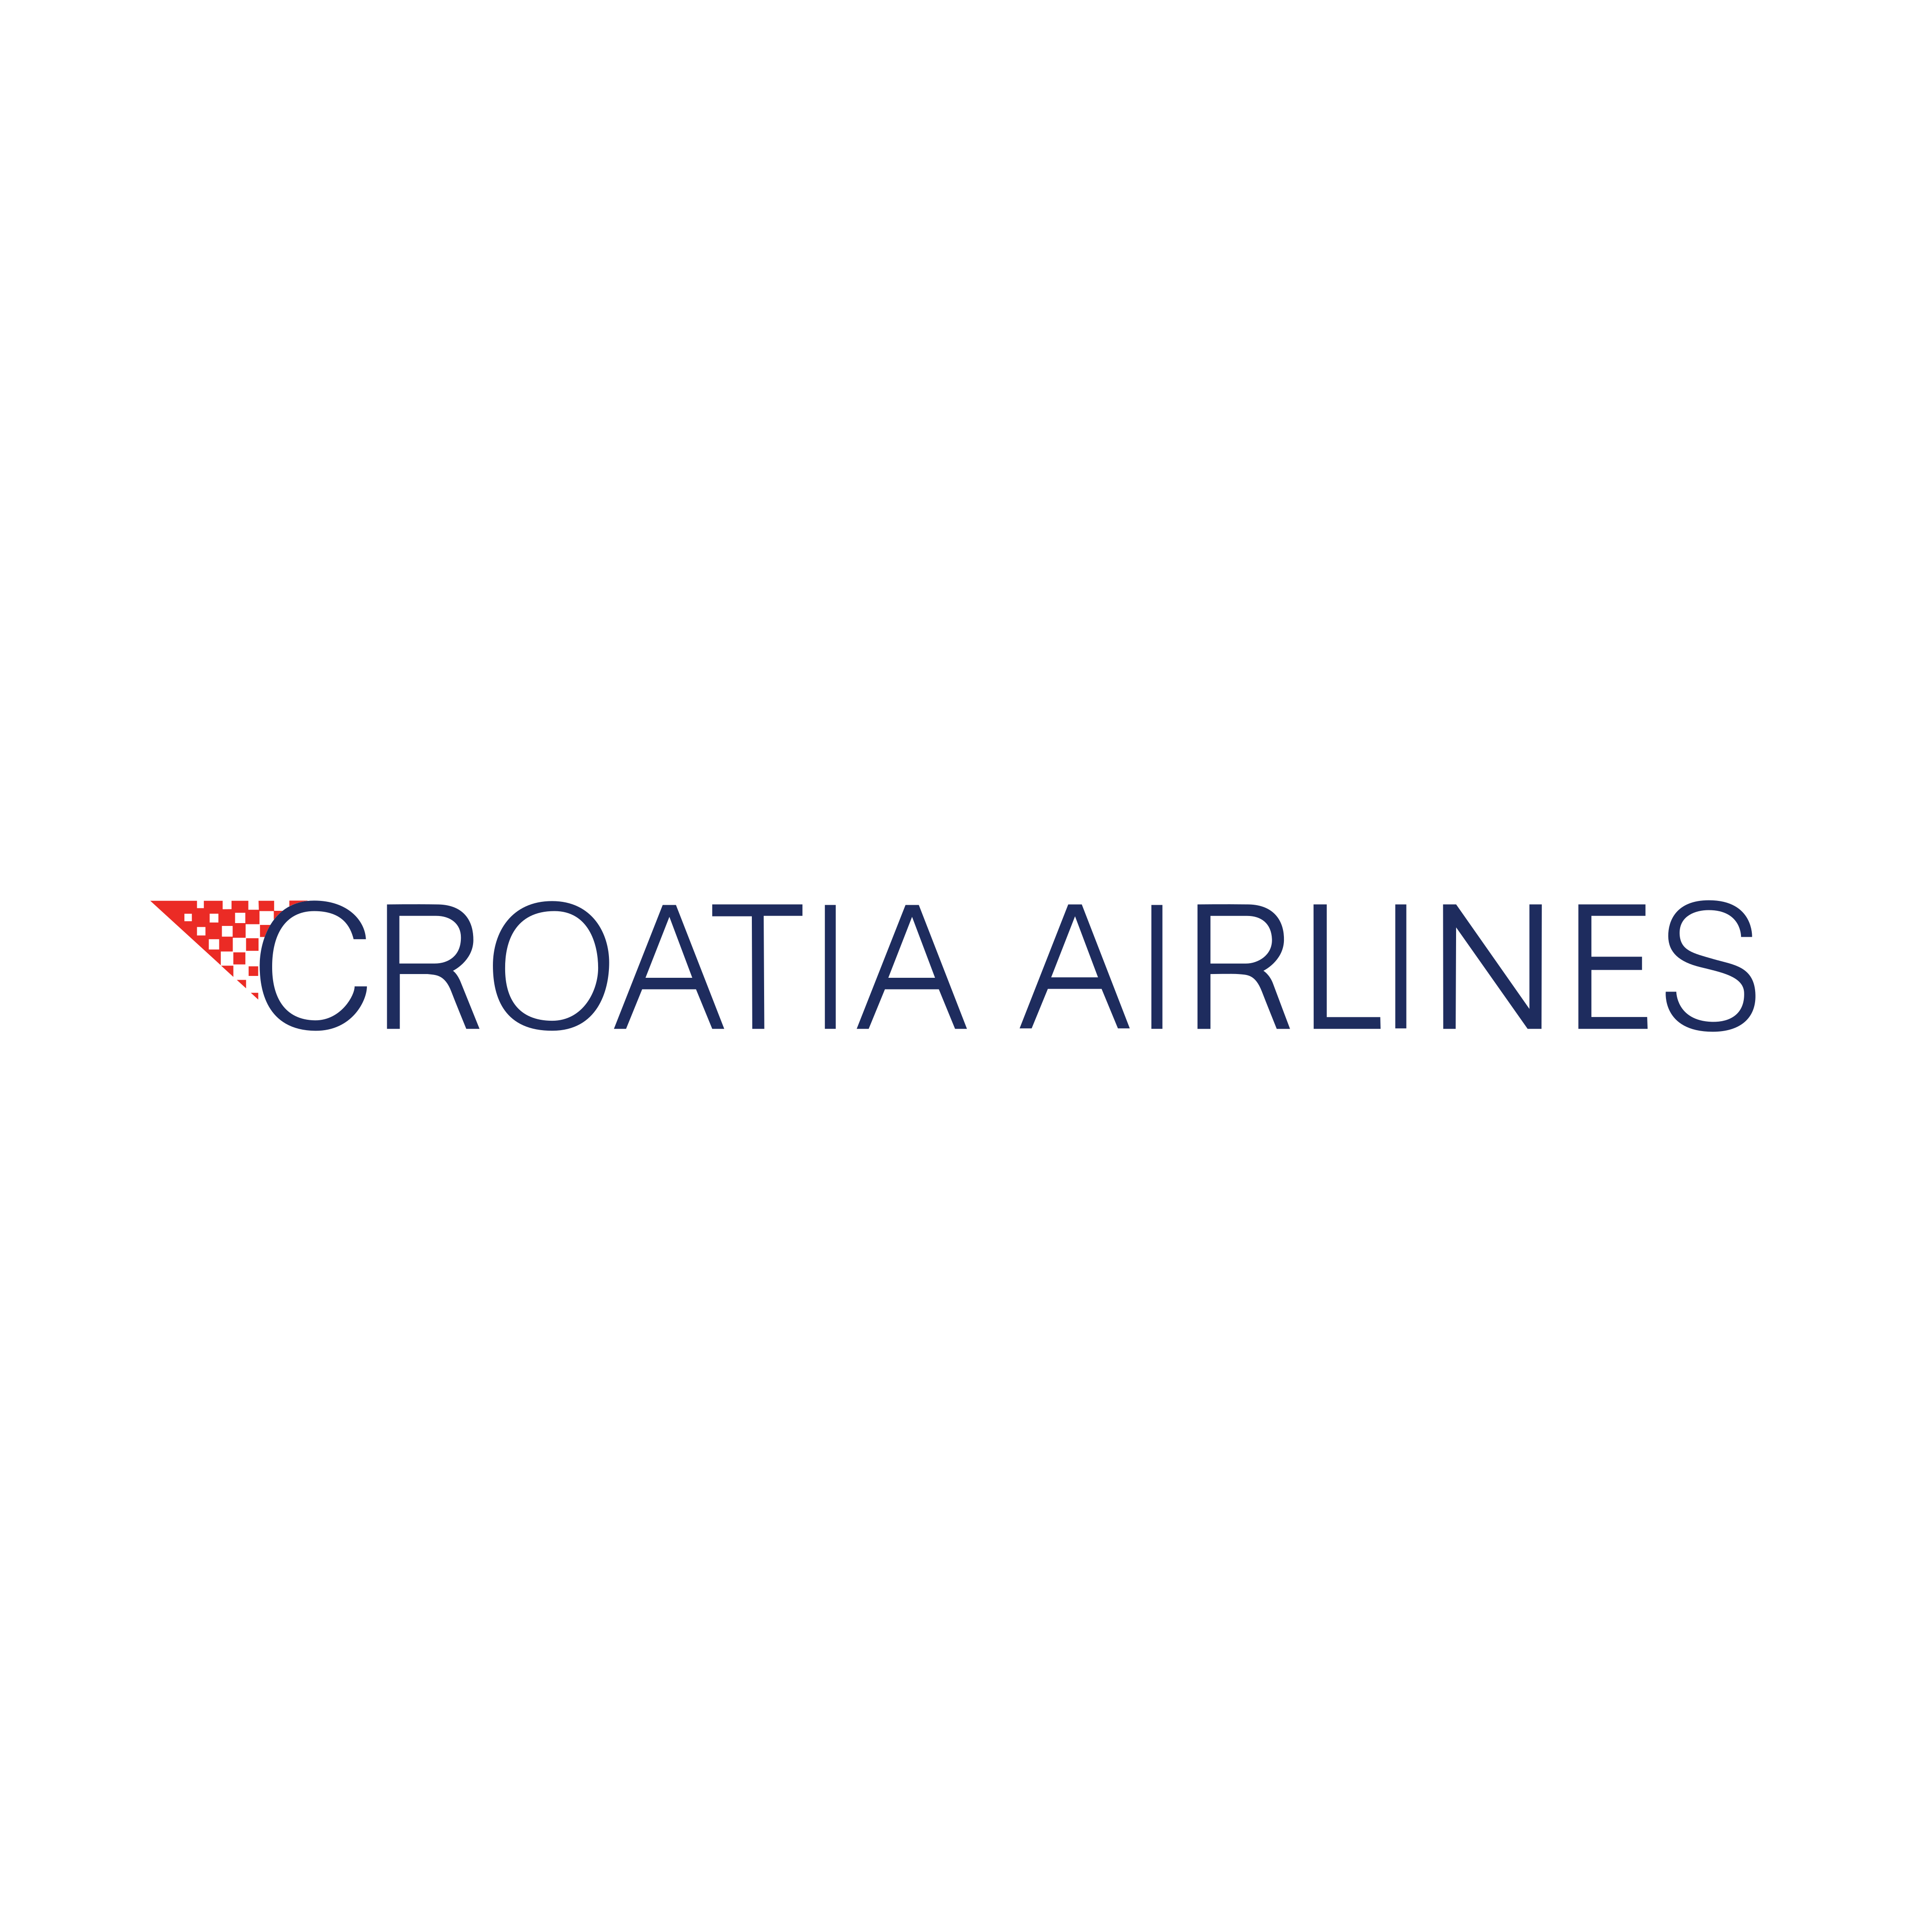 croatia airlines logo 0 - Croatia Airlines Logo